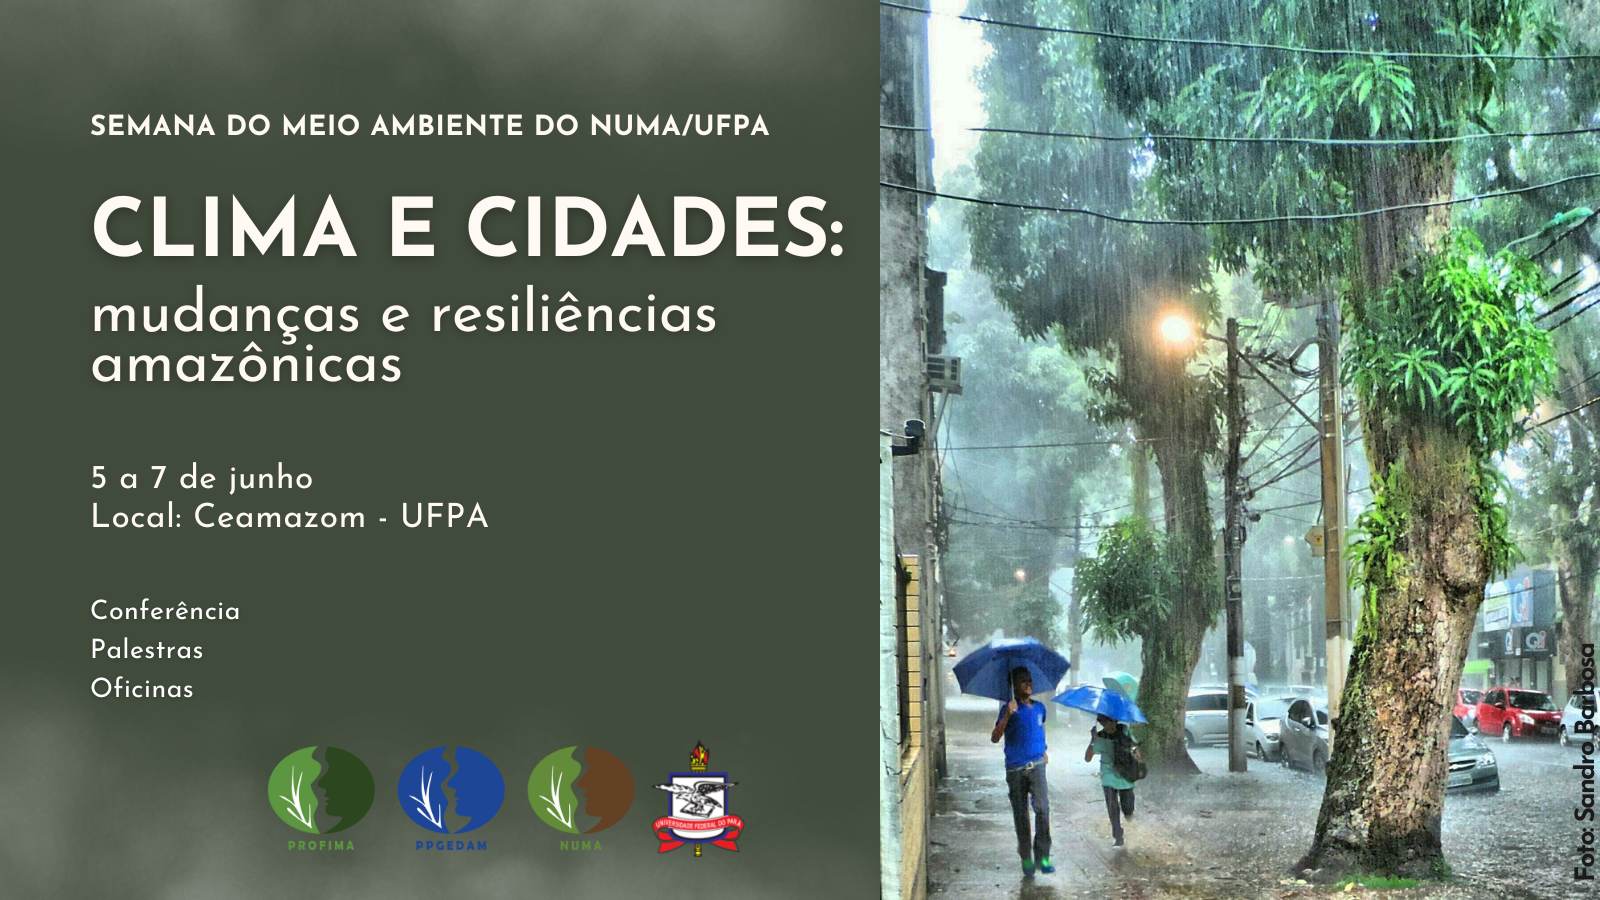 Semana do Meio Ambiente do NUMA/UFPA vai dialogar sobre o tema 